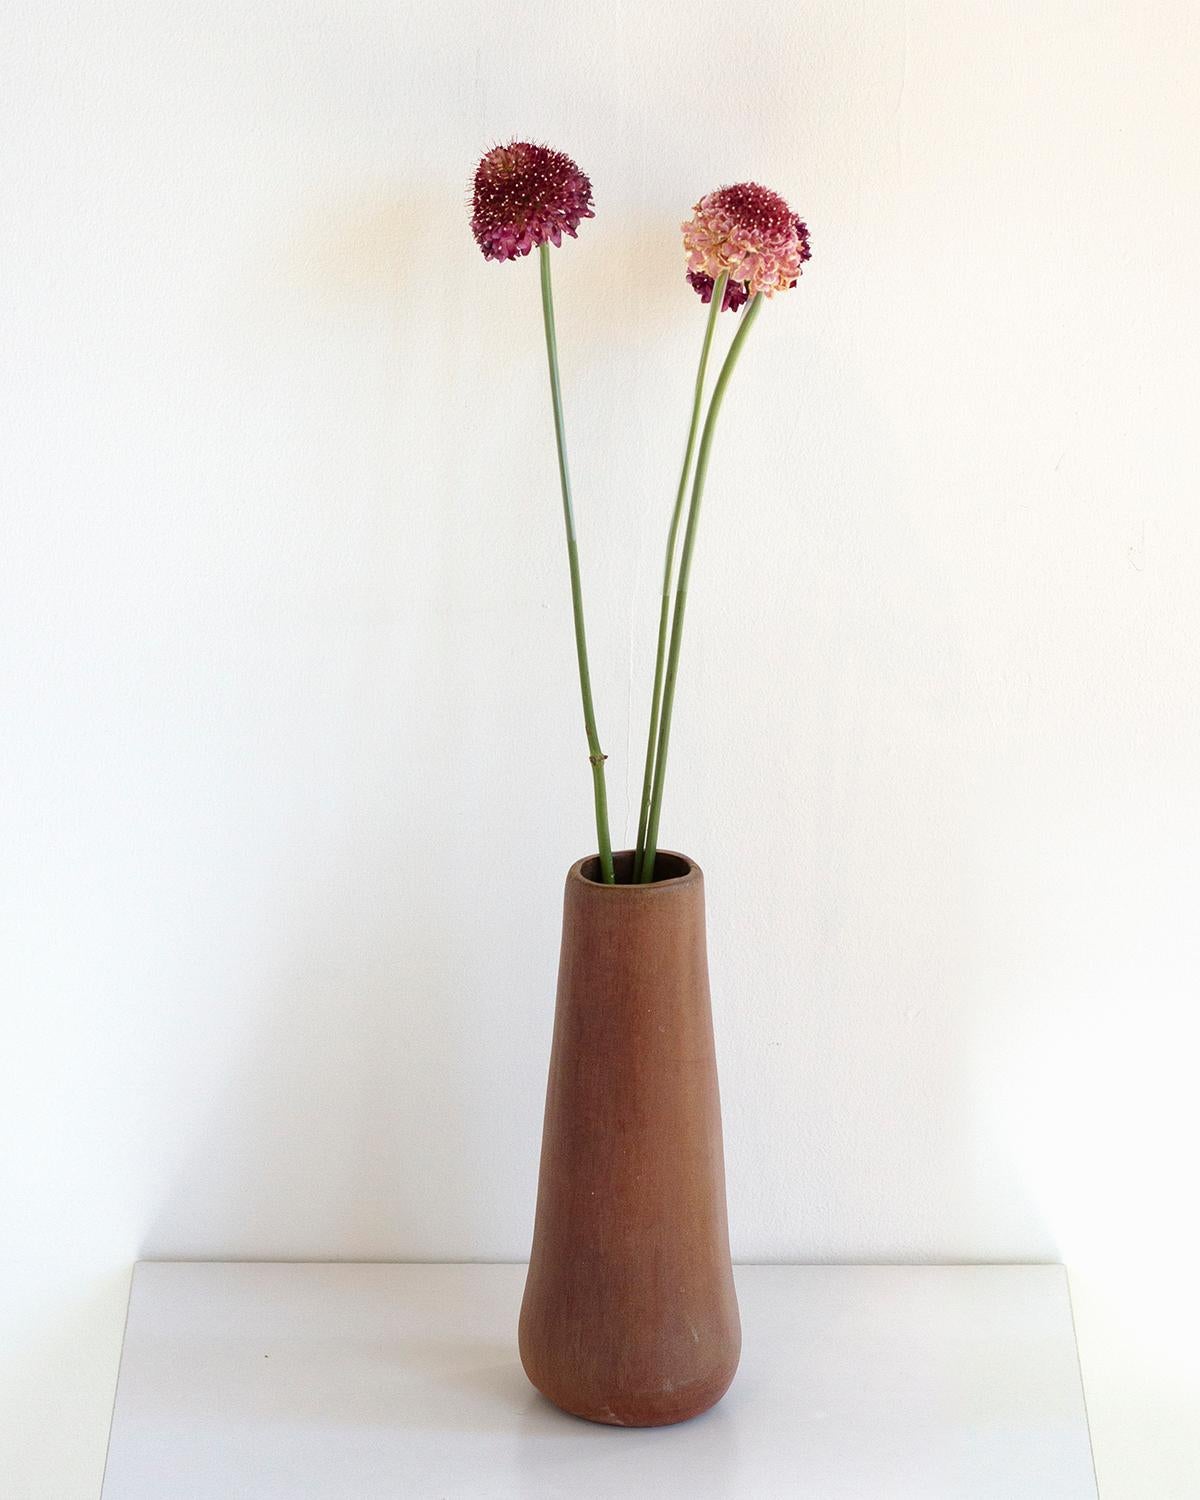 Diese Solitaire Tonvase ist aus gebranntem Ton gefertigt und eignet sich perfekt, um Blumen, Zweige oder andere Dekorationen in minimalistischem Luxus zu präsentieren. Der rustikale Braunton unterstreicht seine ruhige Eleganz und macht ihn zu einem